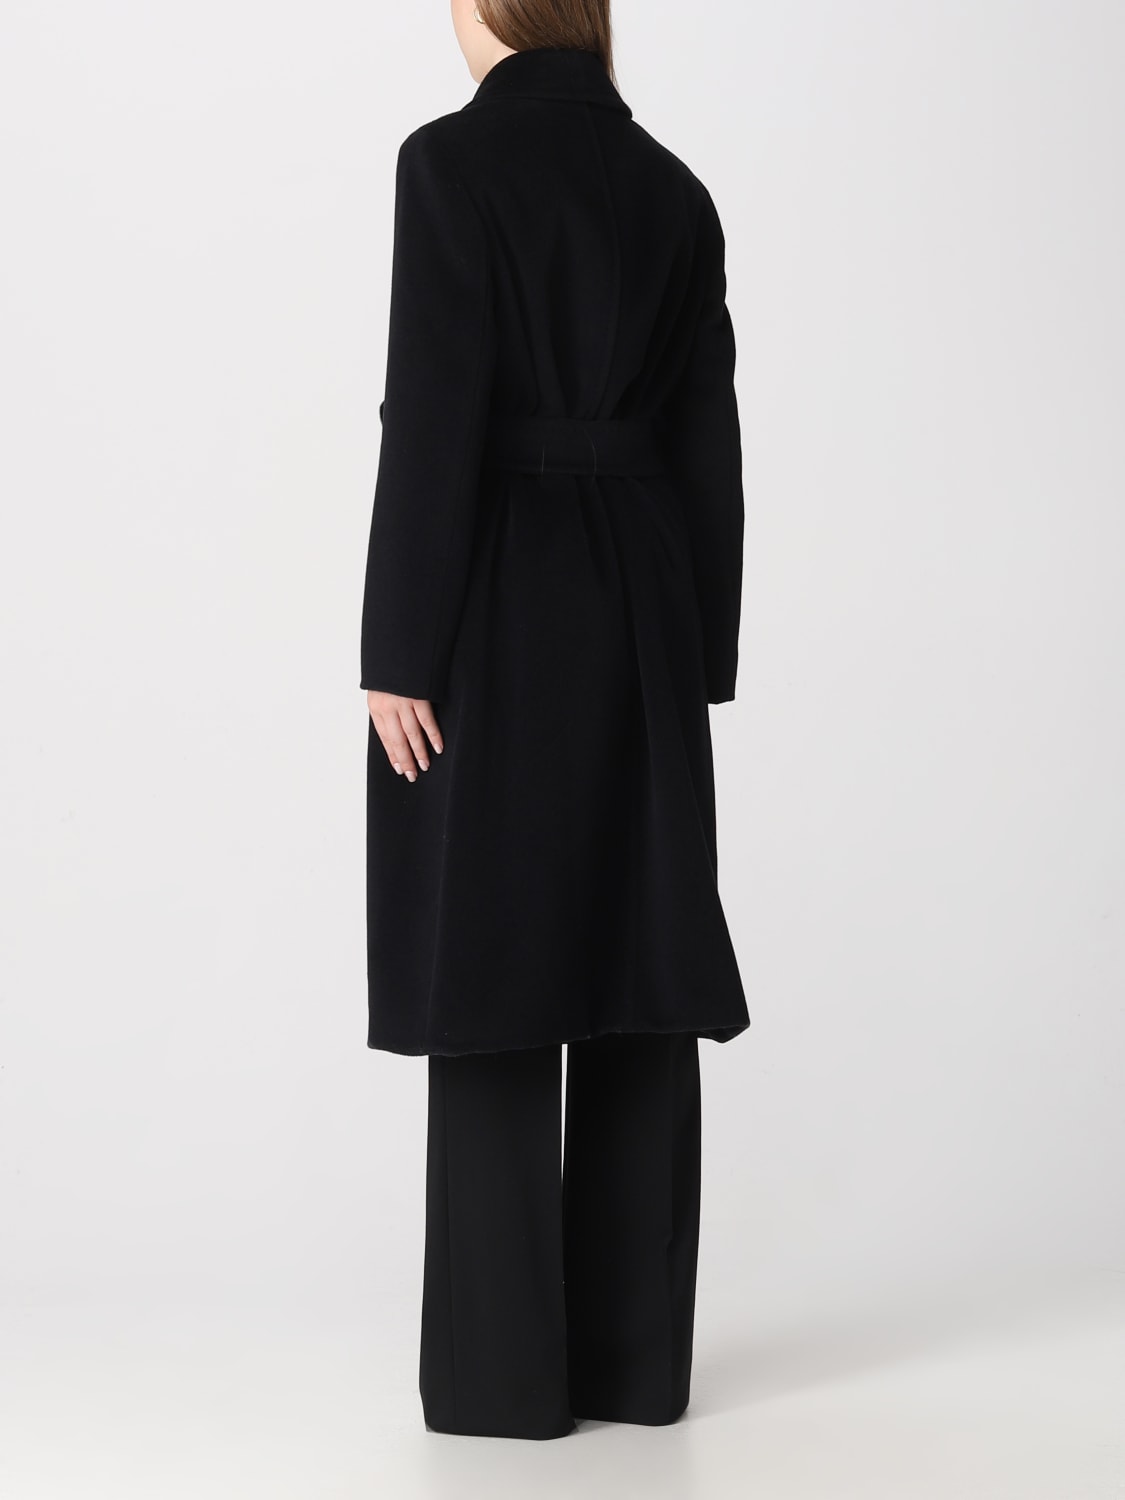 MAX MARA: coat in wool - Black | Max Mara coat 2360161233600 online at ...